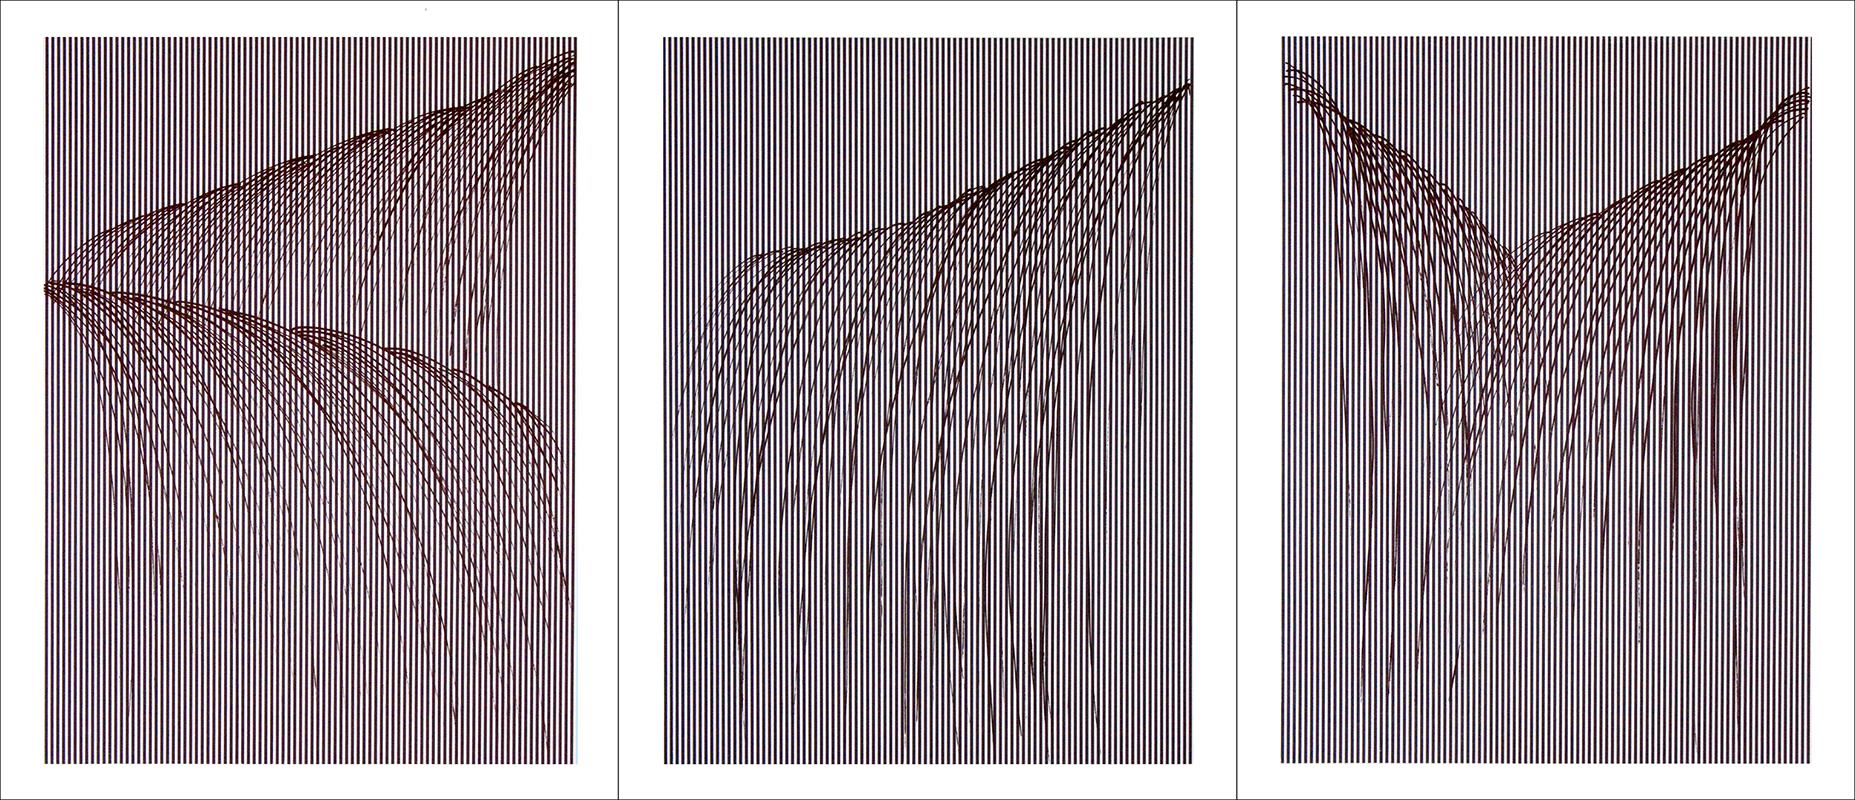 Waterfall I - Print by Tom Orr